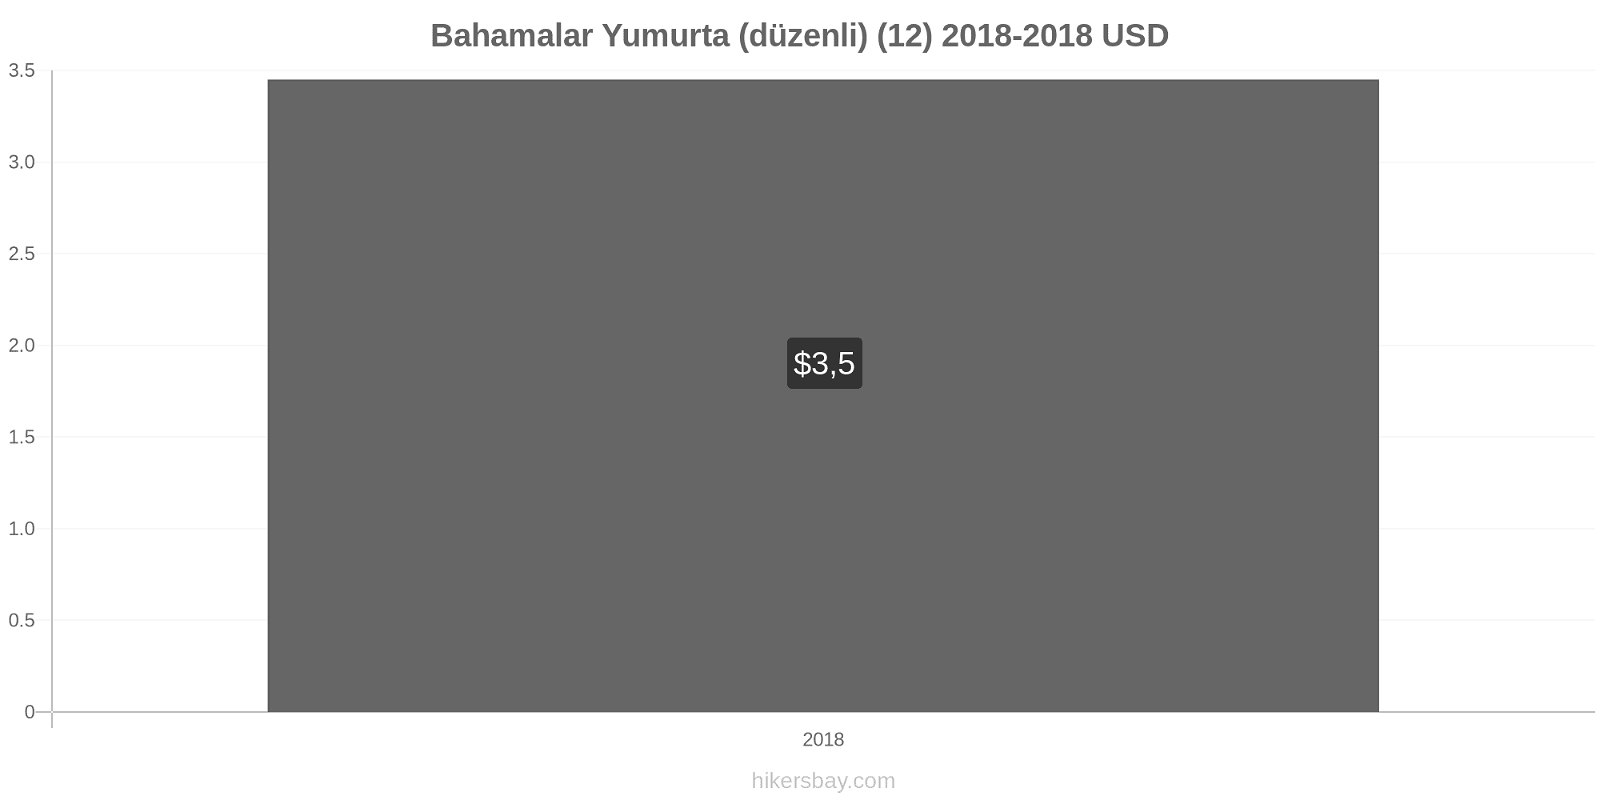 Bahamalar fiyat değişiklikleri Yumurta (normal) (12) hikersbay.com